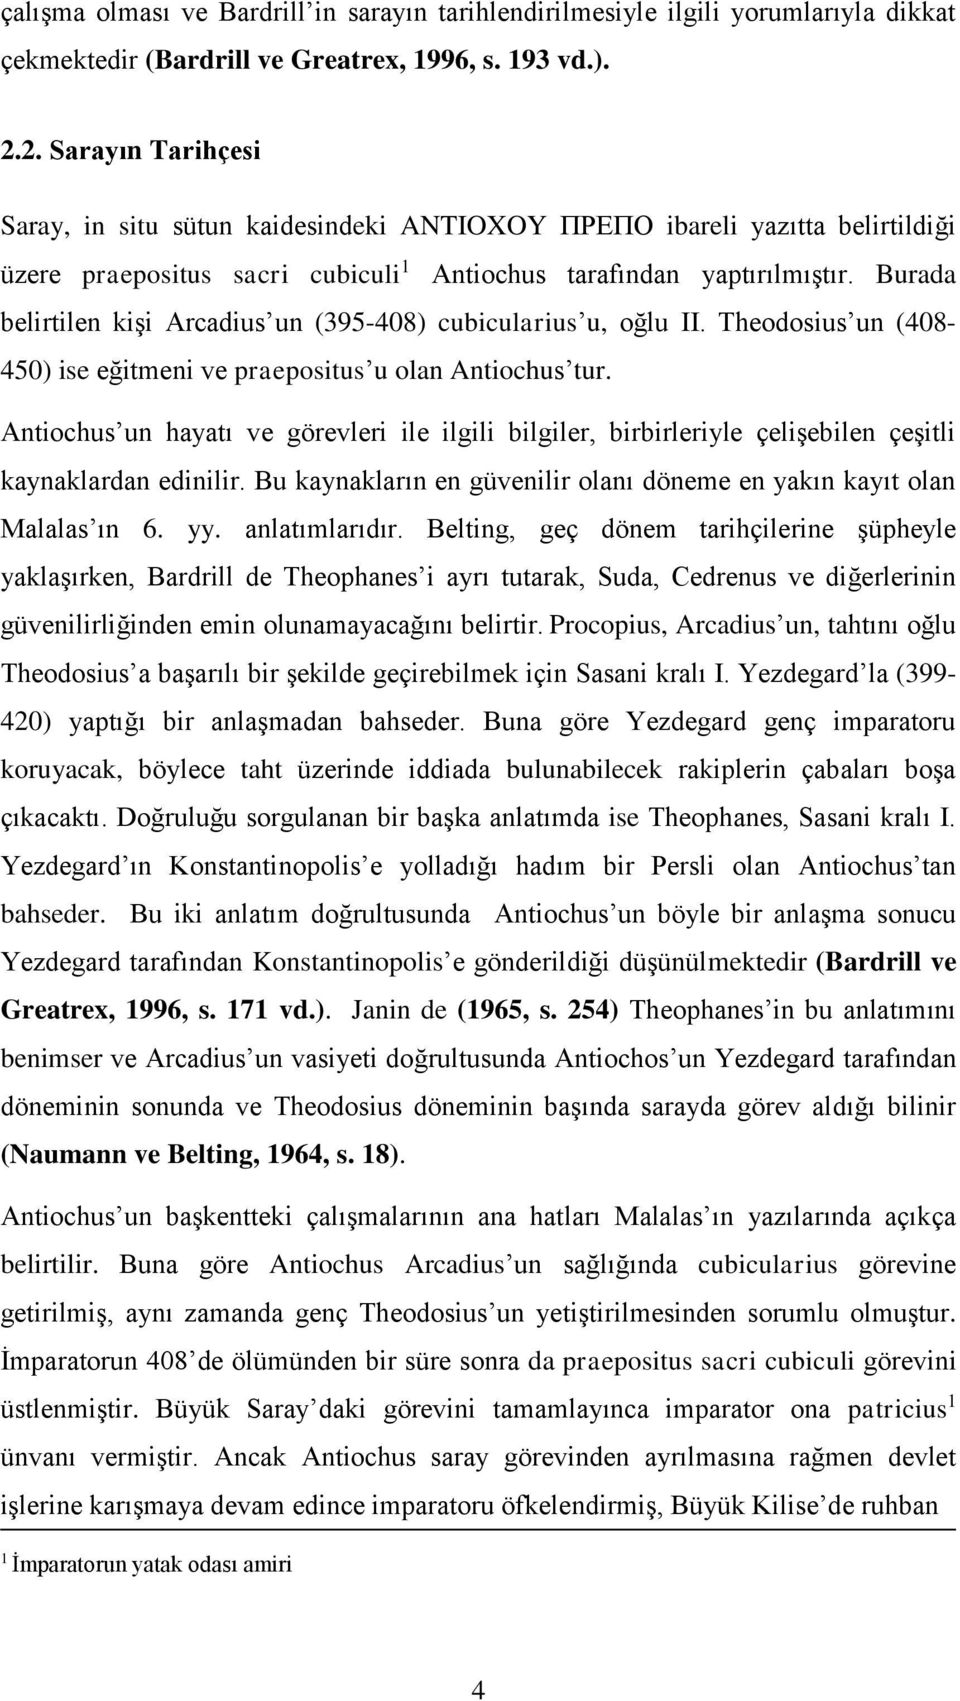 Burada belirtilen kişi Arcadius un (395-408) cubicularius u, oğlu II. Theodosius un (408-450) ise eğitmeni ve praepositus u olan Antiochus tur.